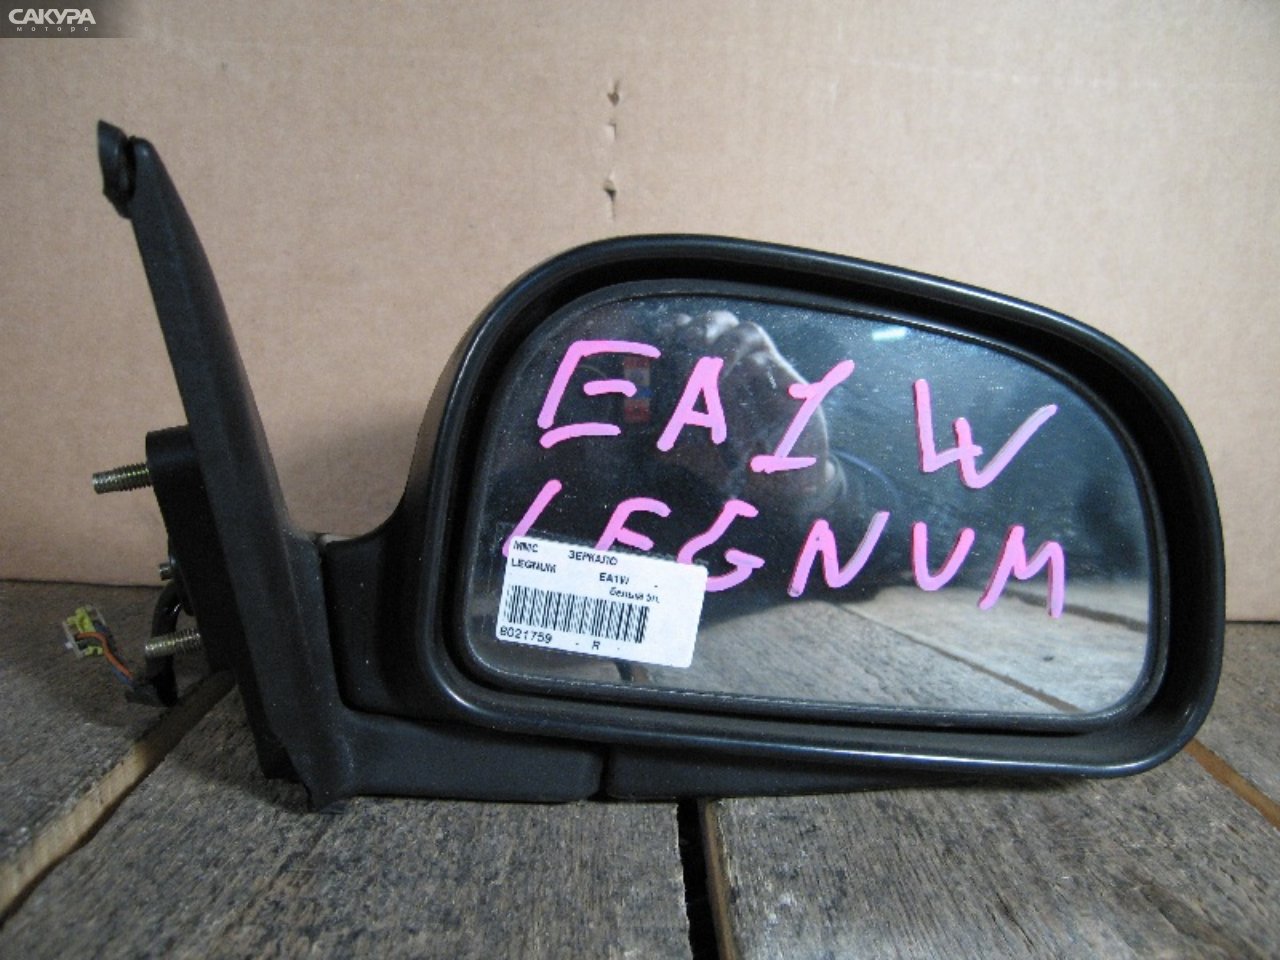 Зеркало боковое правое Mitsubishi Legnum EA1W: купить в Сакура Абакан.